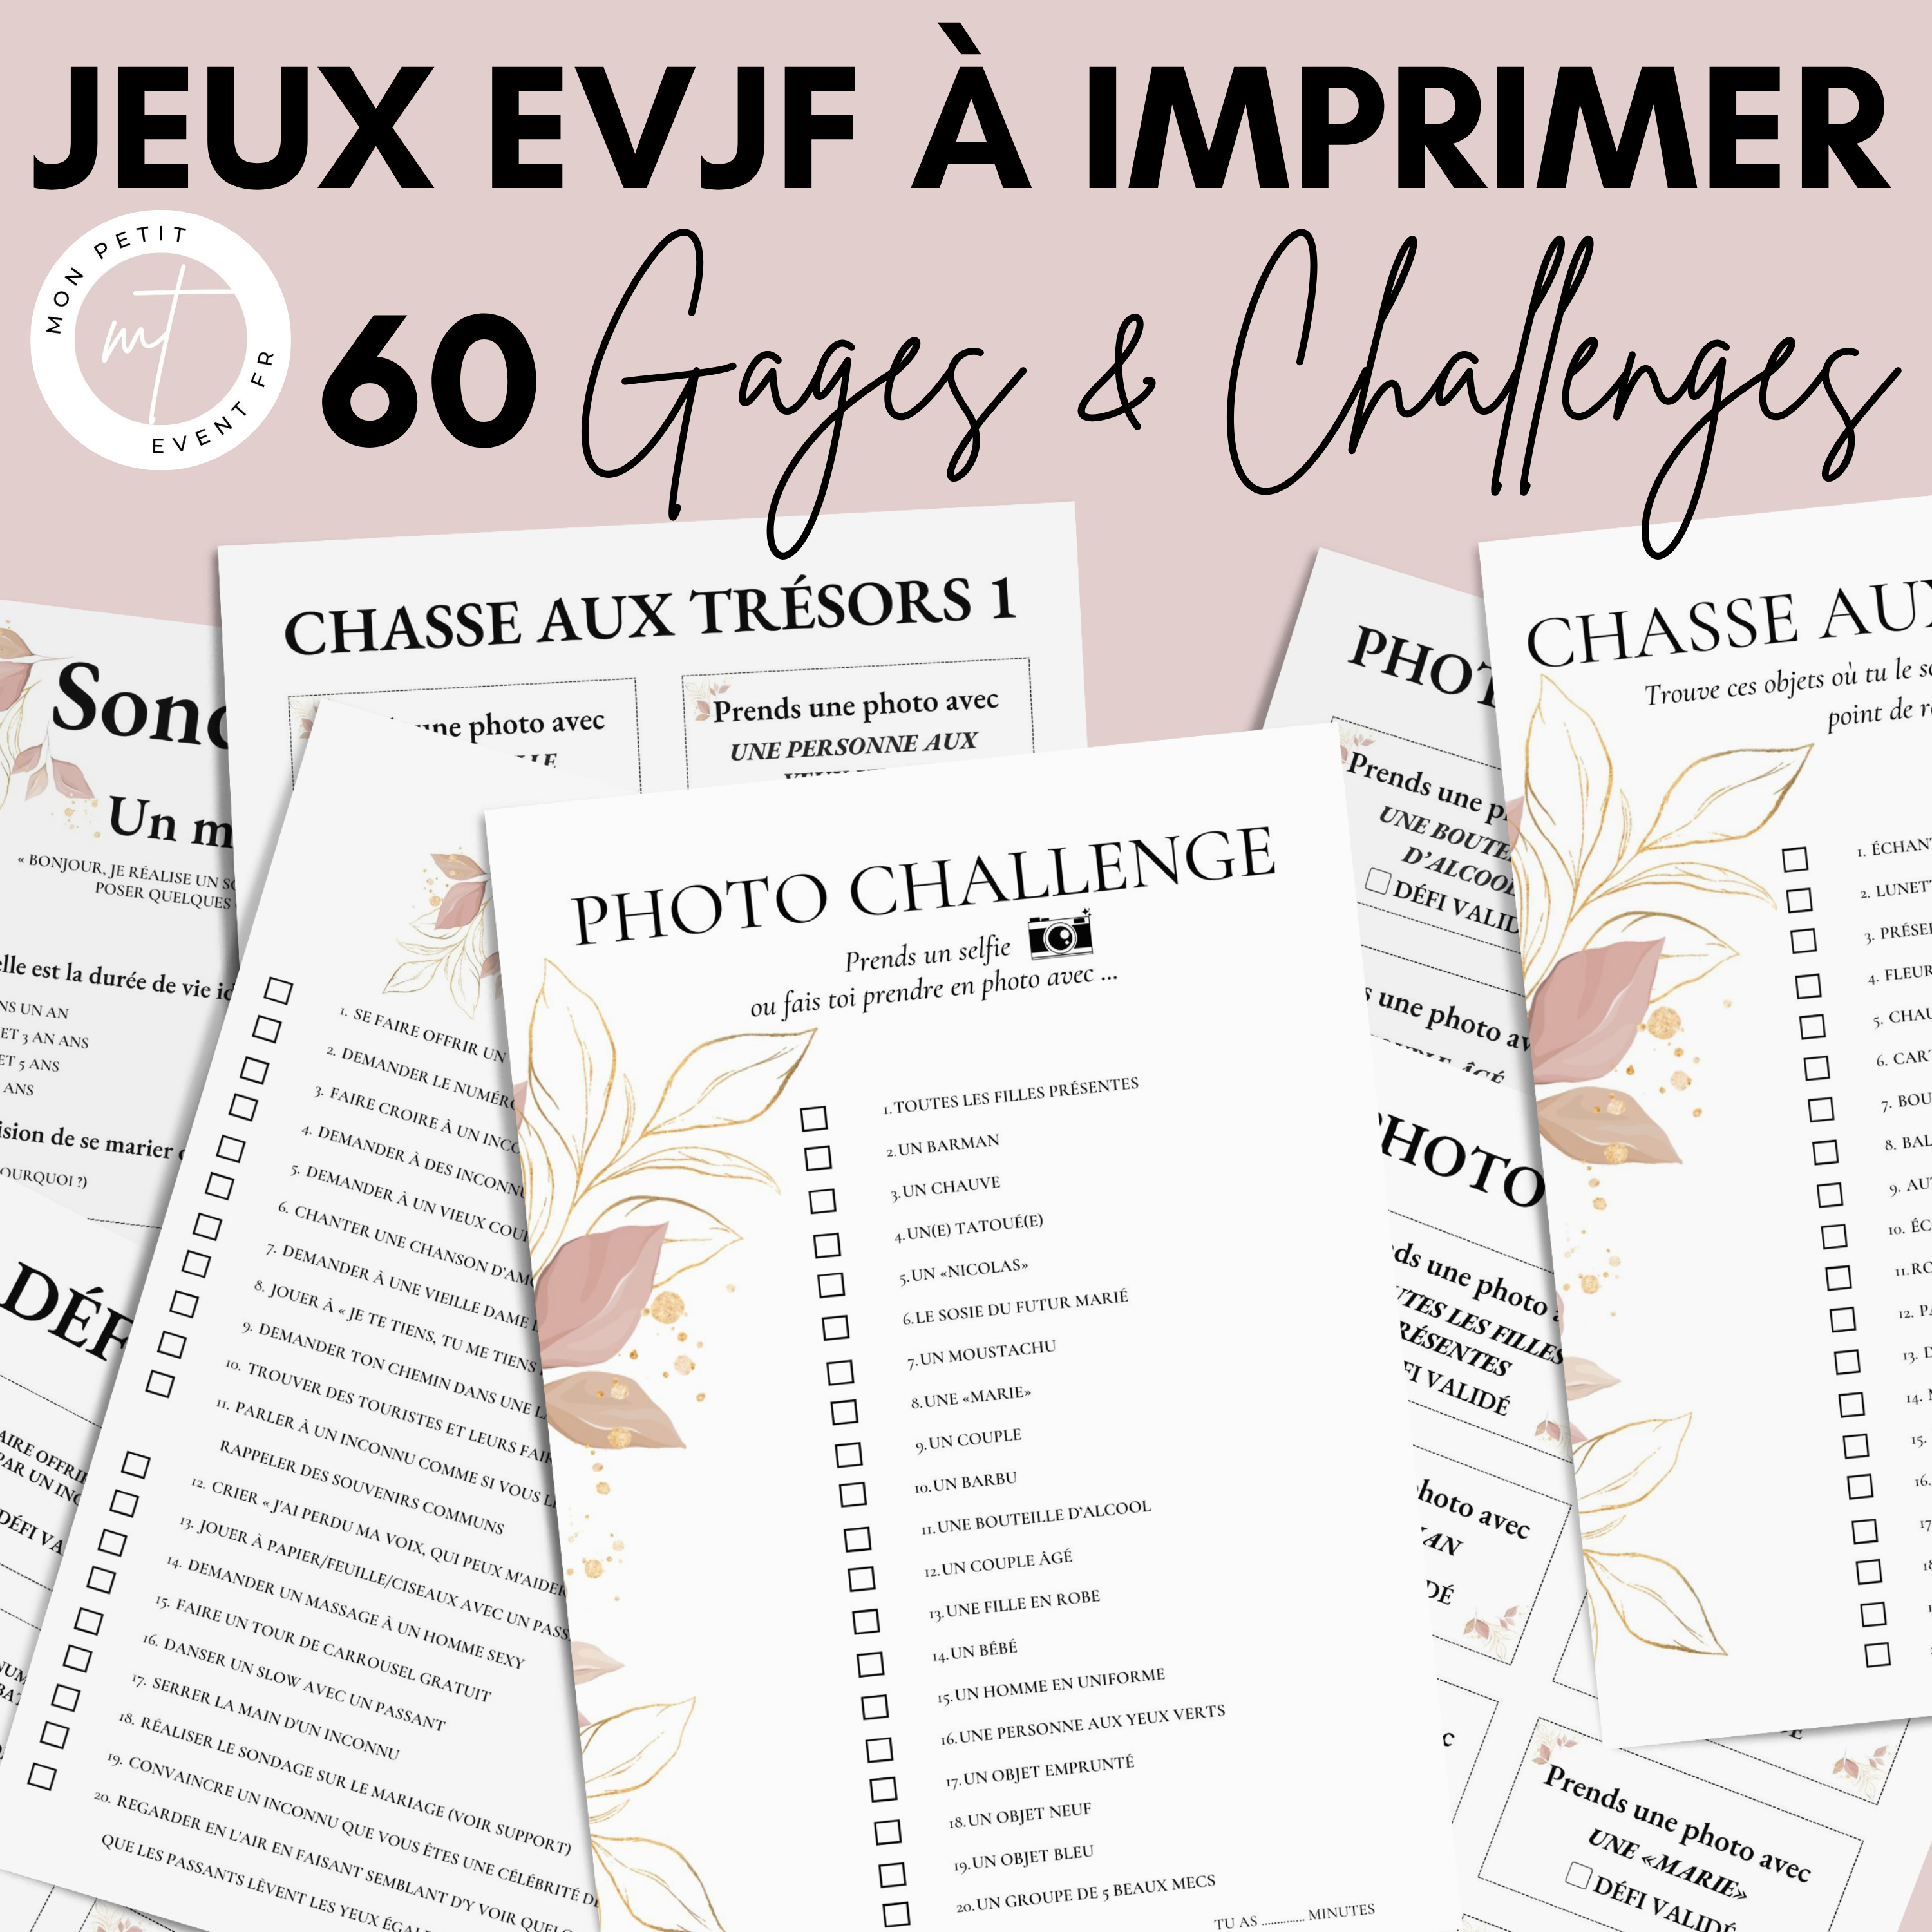 Jeux EVJF à imprimer - 60 Gages, Défis & Challenges pour un enterremen –  monpetiteventfrance